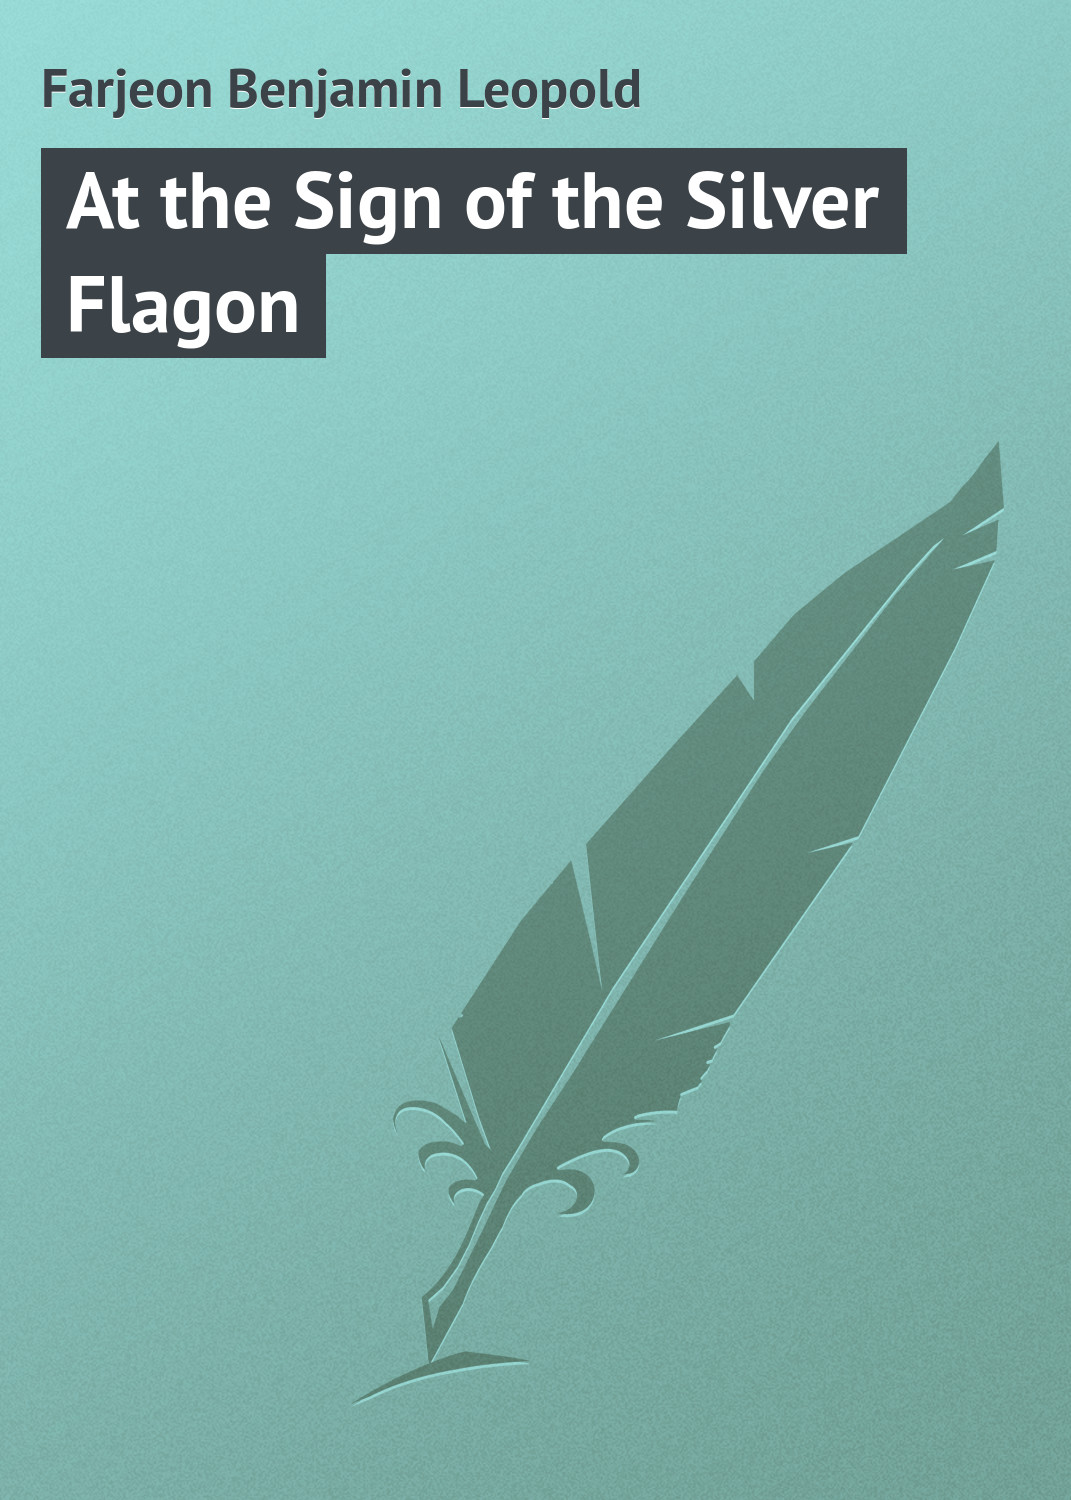 Книга At the Sign of the Silver Flagon из серии , созданная Benjamin Farjeon, может относится к жанру Зарубежная классика. Стоимость электронной книги At the Sign of the Silver Flagon с идентификатором 23164731 составляет 5.99 руб.